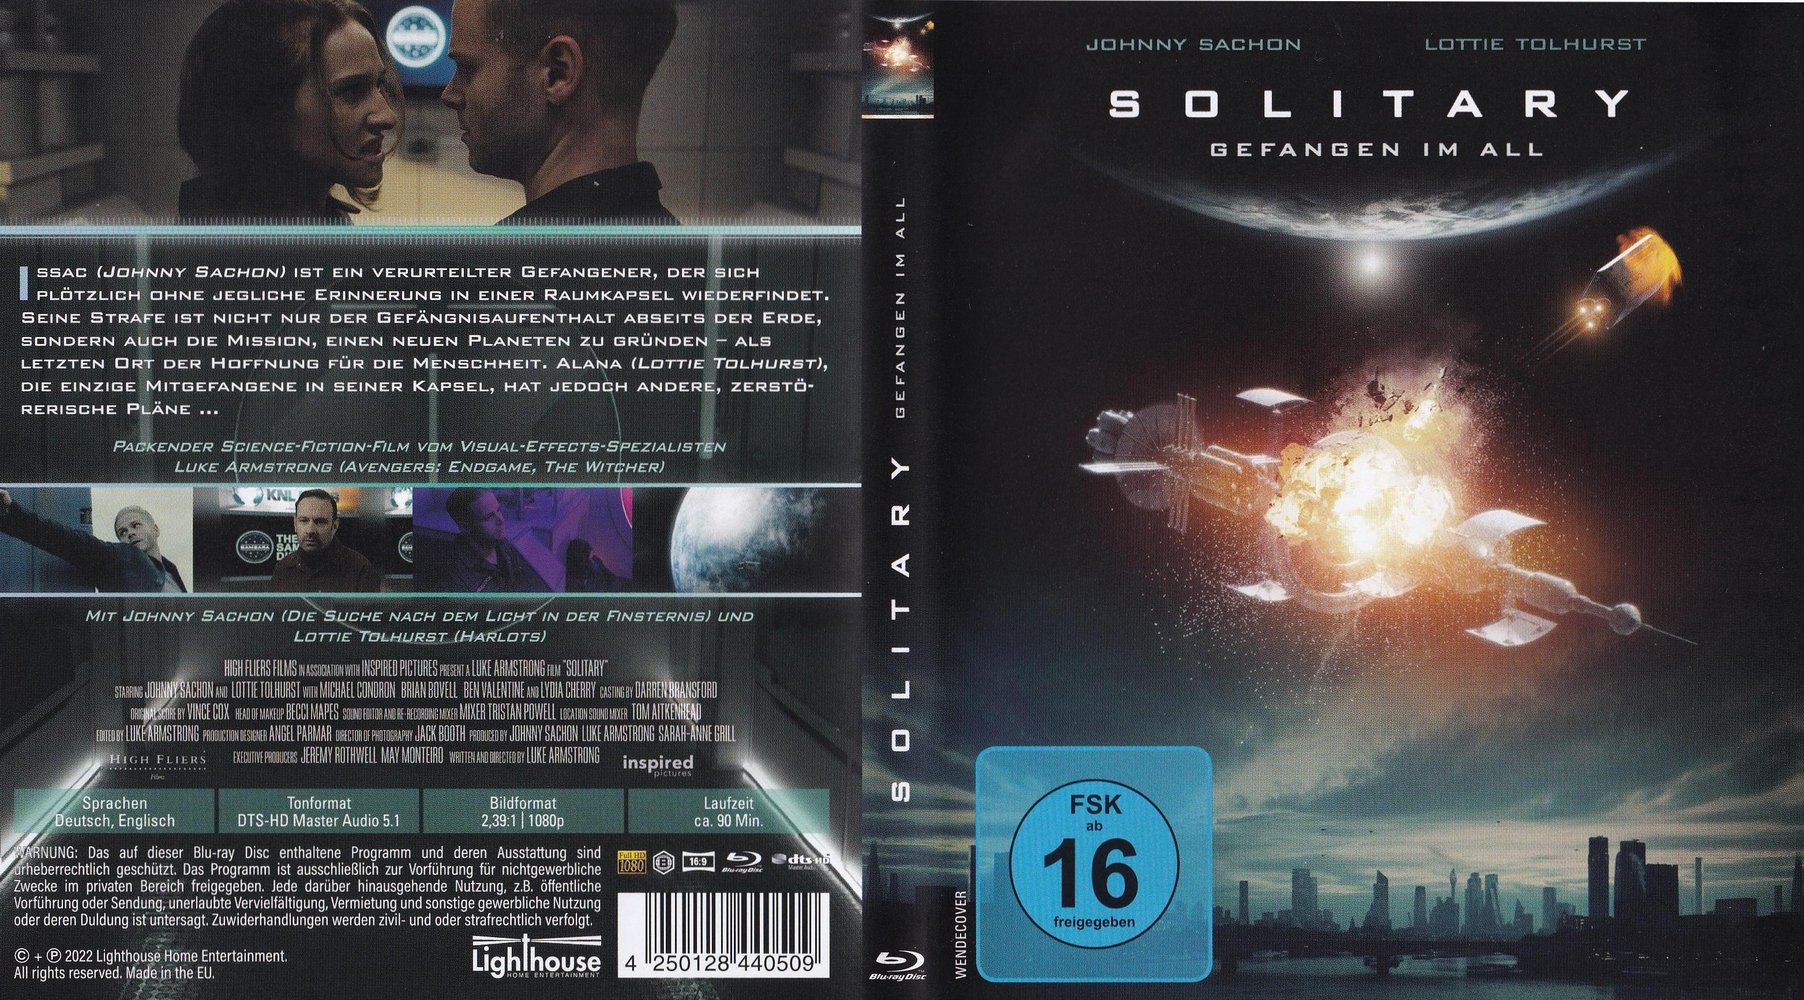 Lockout: DVD, Blu-ray oder VoD leihen - VIDEOBUSTER